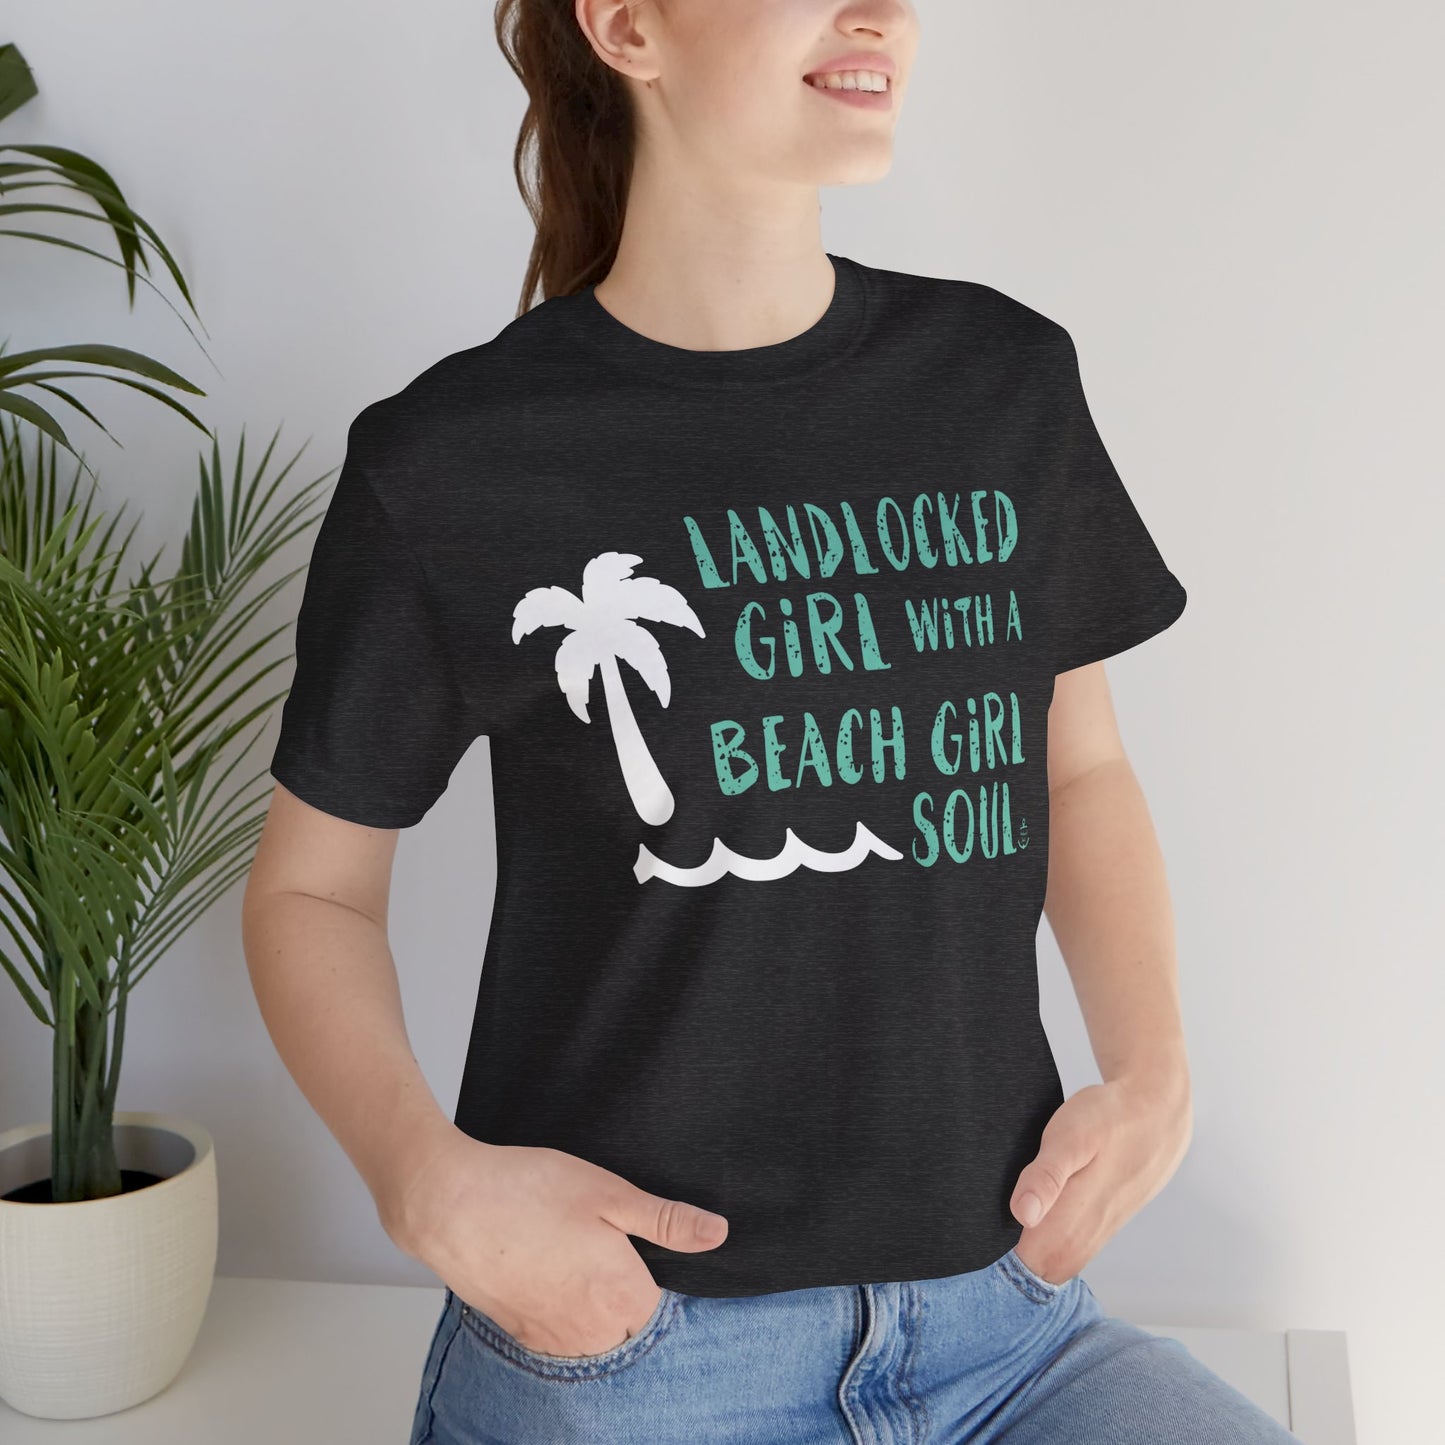 Landlocked girl tshirt, Dark Gray beach tshirt, beach girl, Christmas gift, tshirts for women, Anchored Soul Tshirt